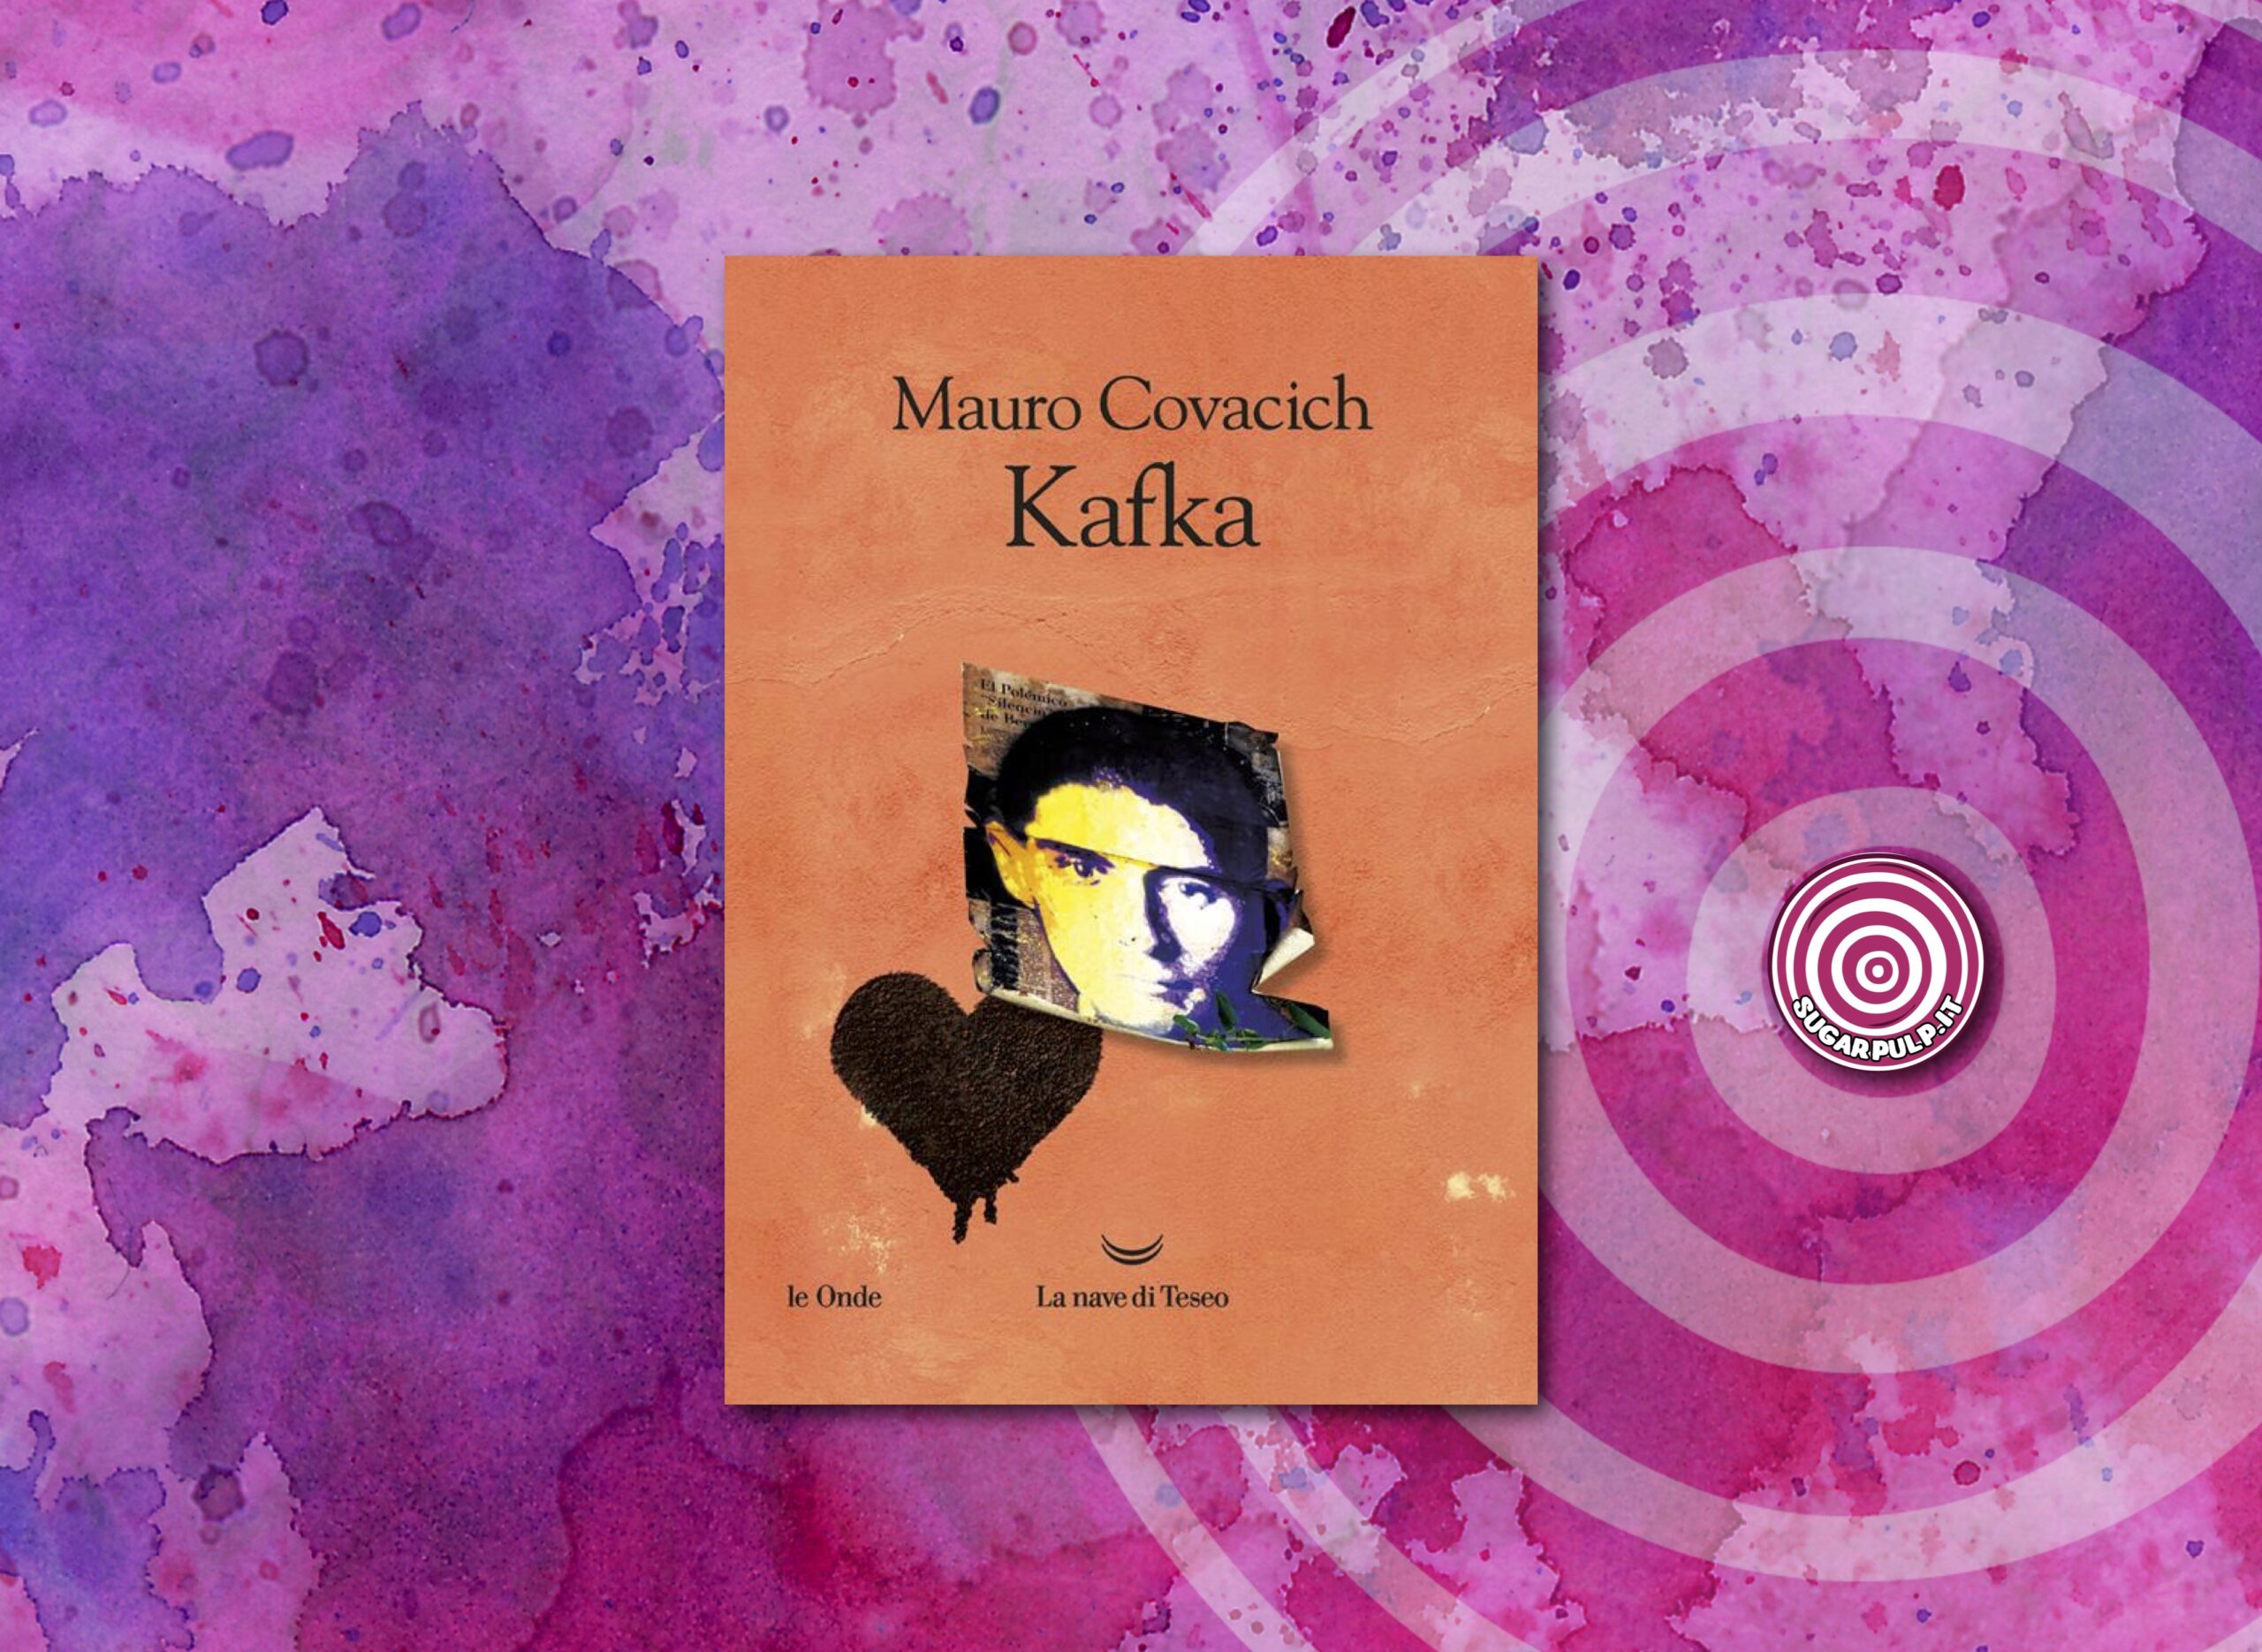 KAFKA, la recensione di Maila Cavaliere del nuovo libro di Mauro Covacich pubblicato da La Nave di Teseo.